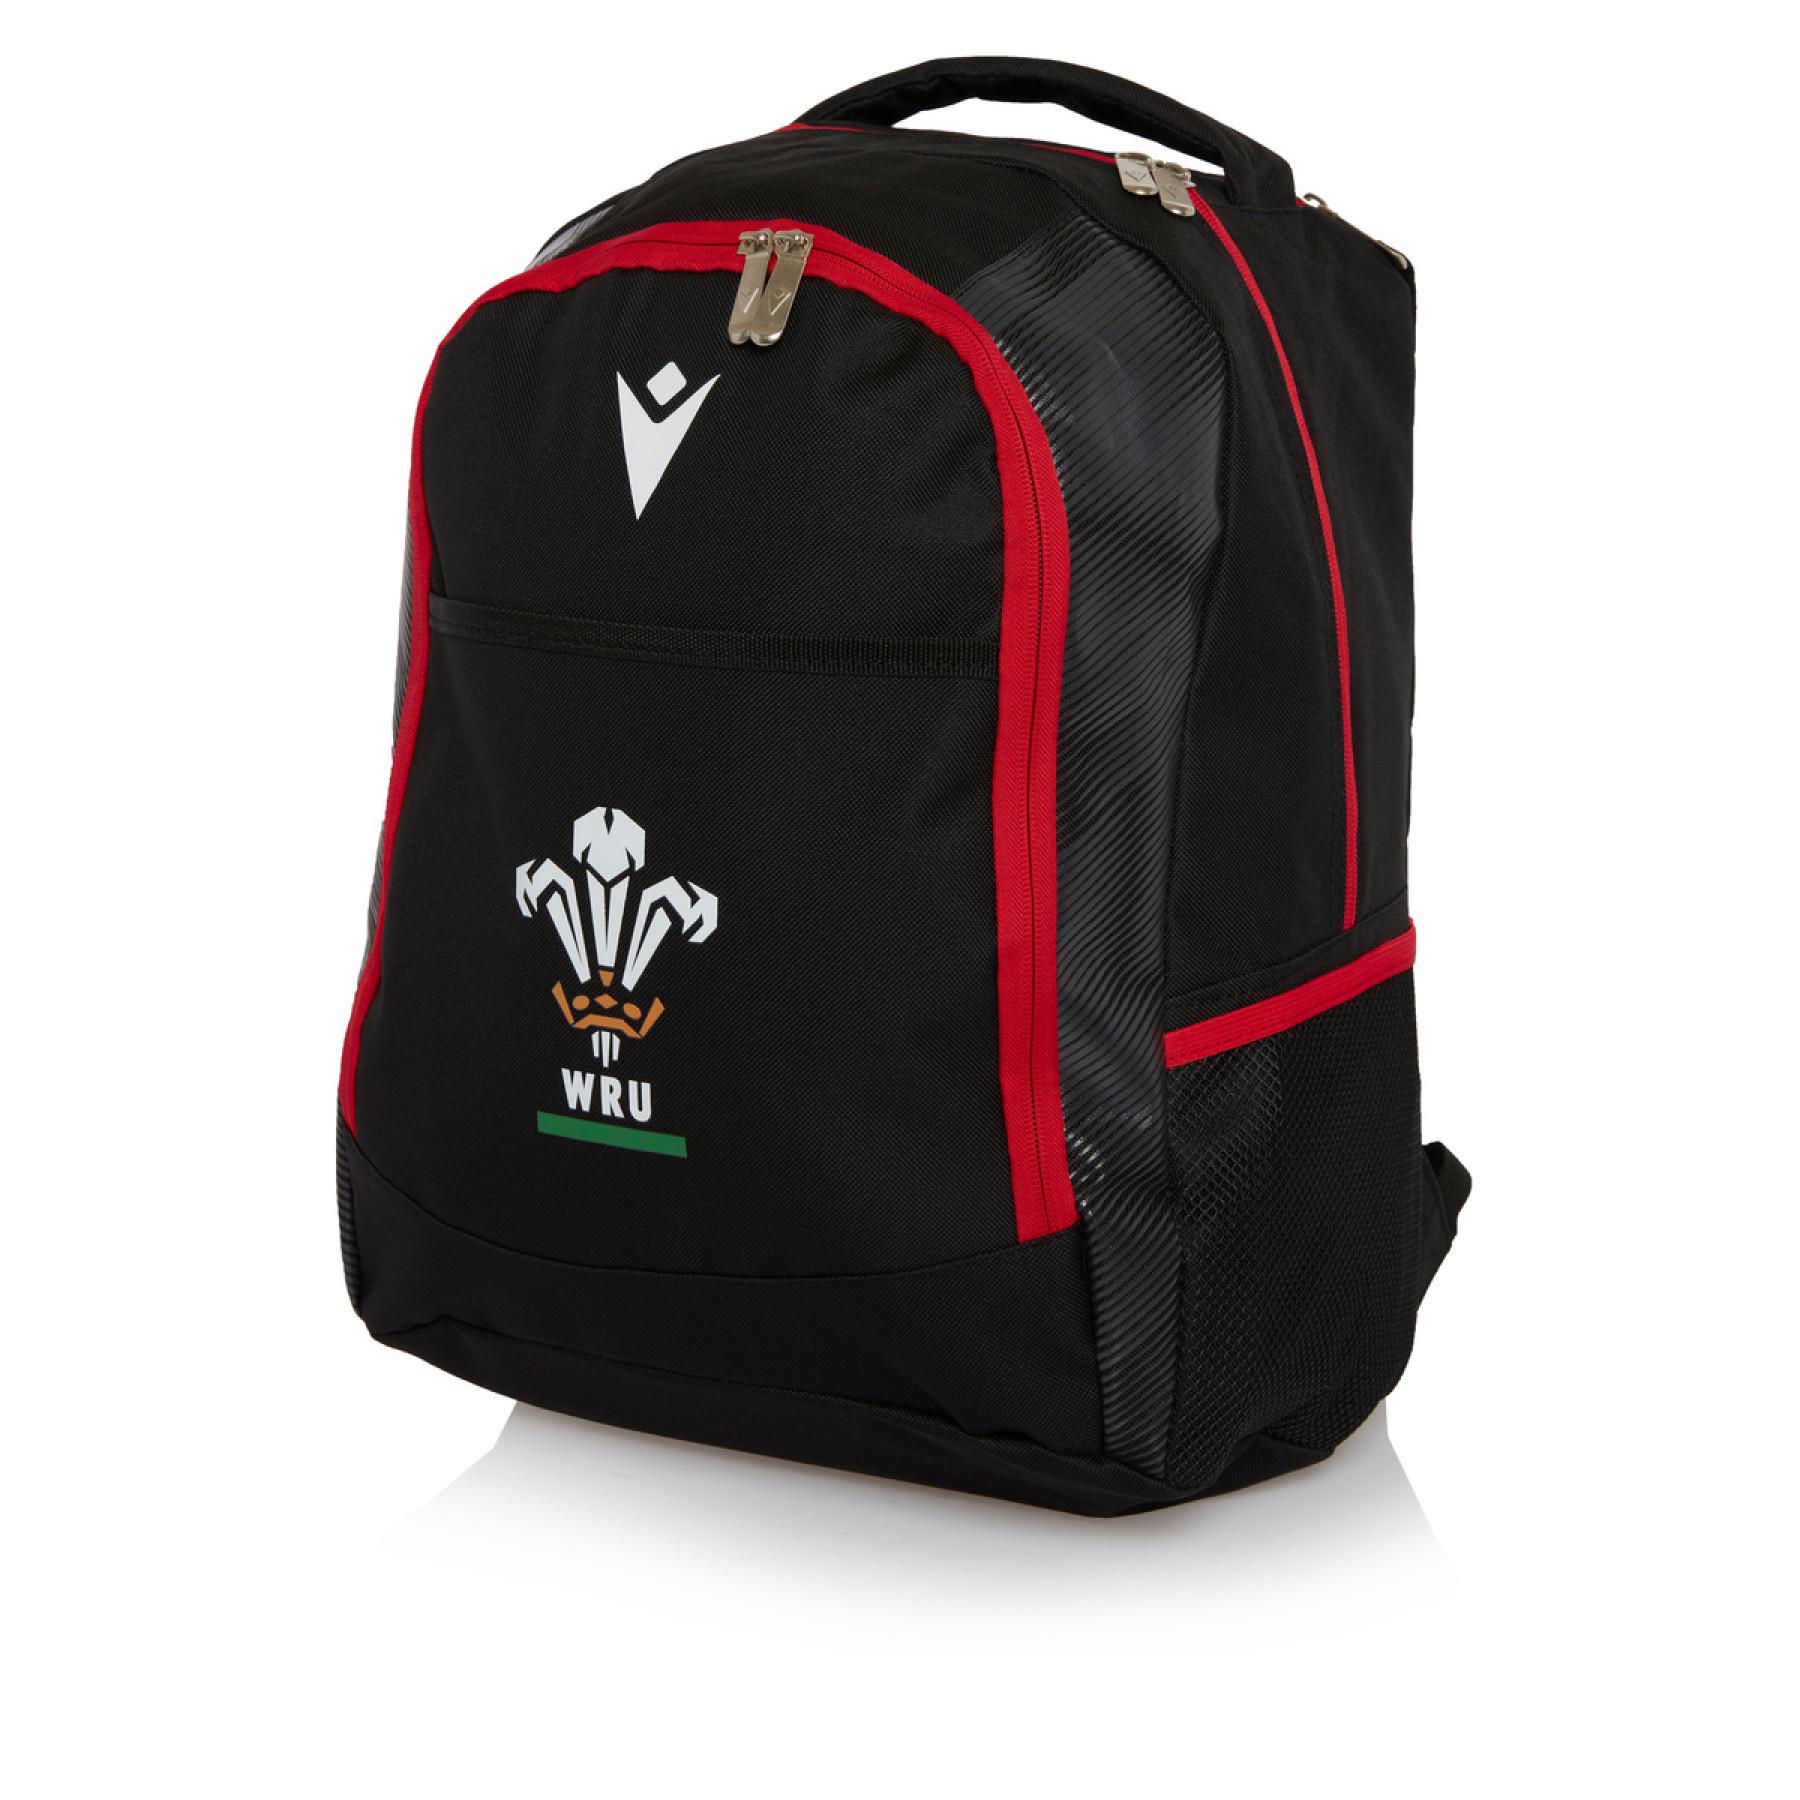 Plecak Pays de Galles rugby 2020/21